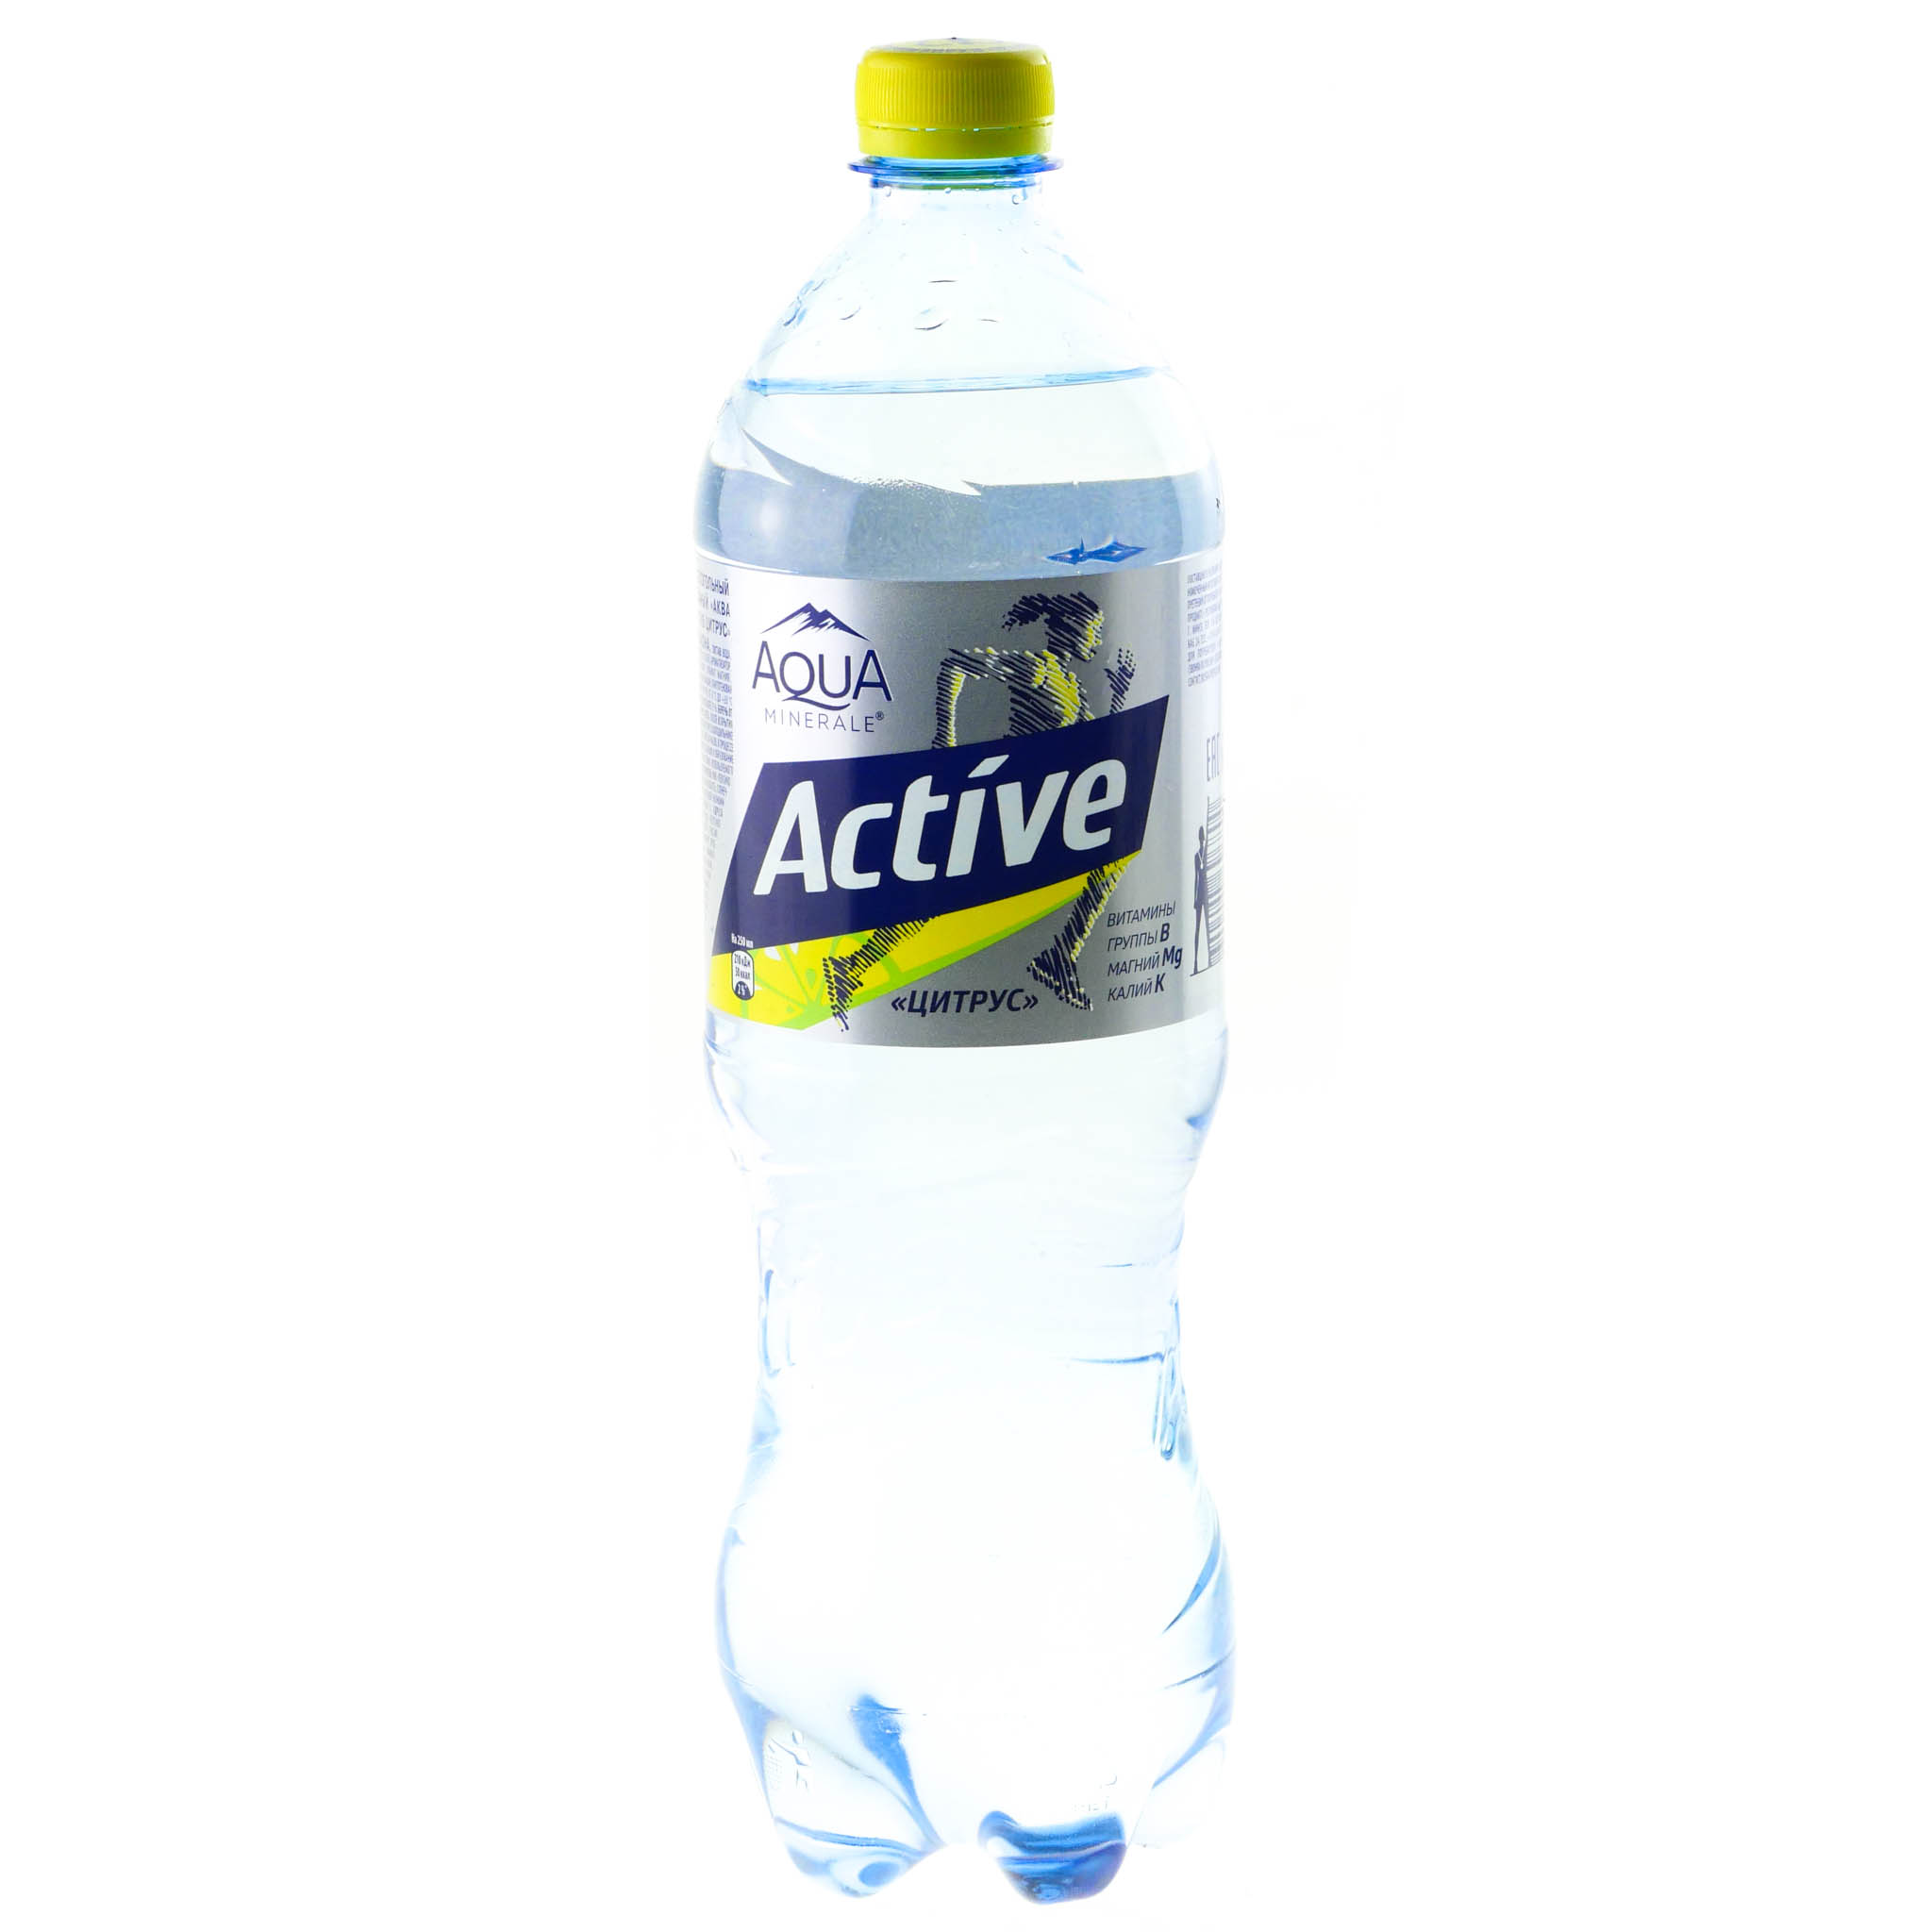 Вода актив с лимоном. Актив Аква Минерале 1л. Aqua minerale Active лимон. Аква Минерале цитрус 1 литр. Аква Минерале Актив цитрус 1л.